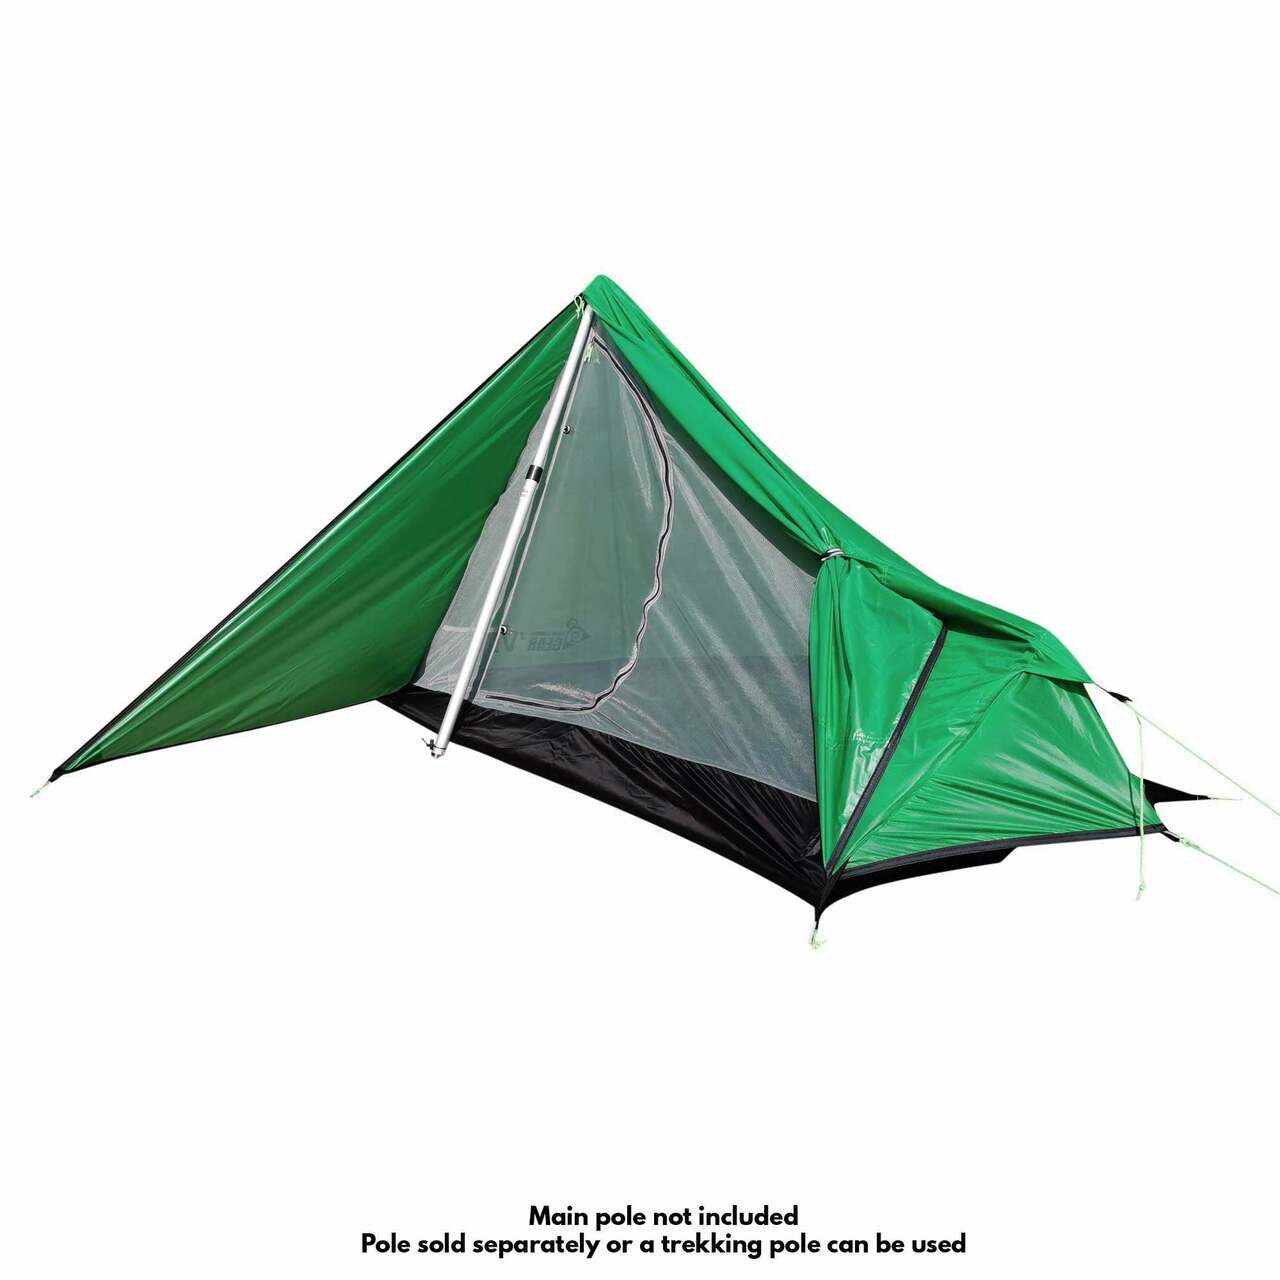 Gram-counter Gear VLT Tent | UK | Ultralight Outdoor Gear